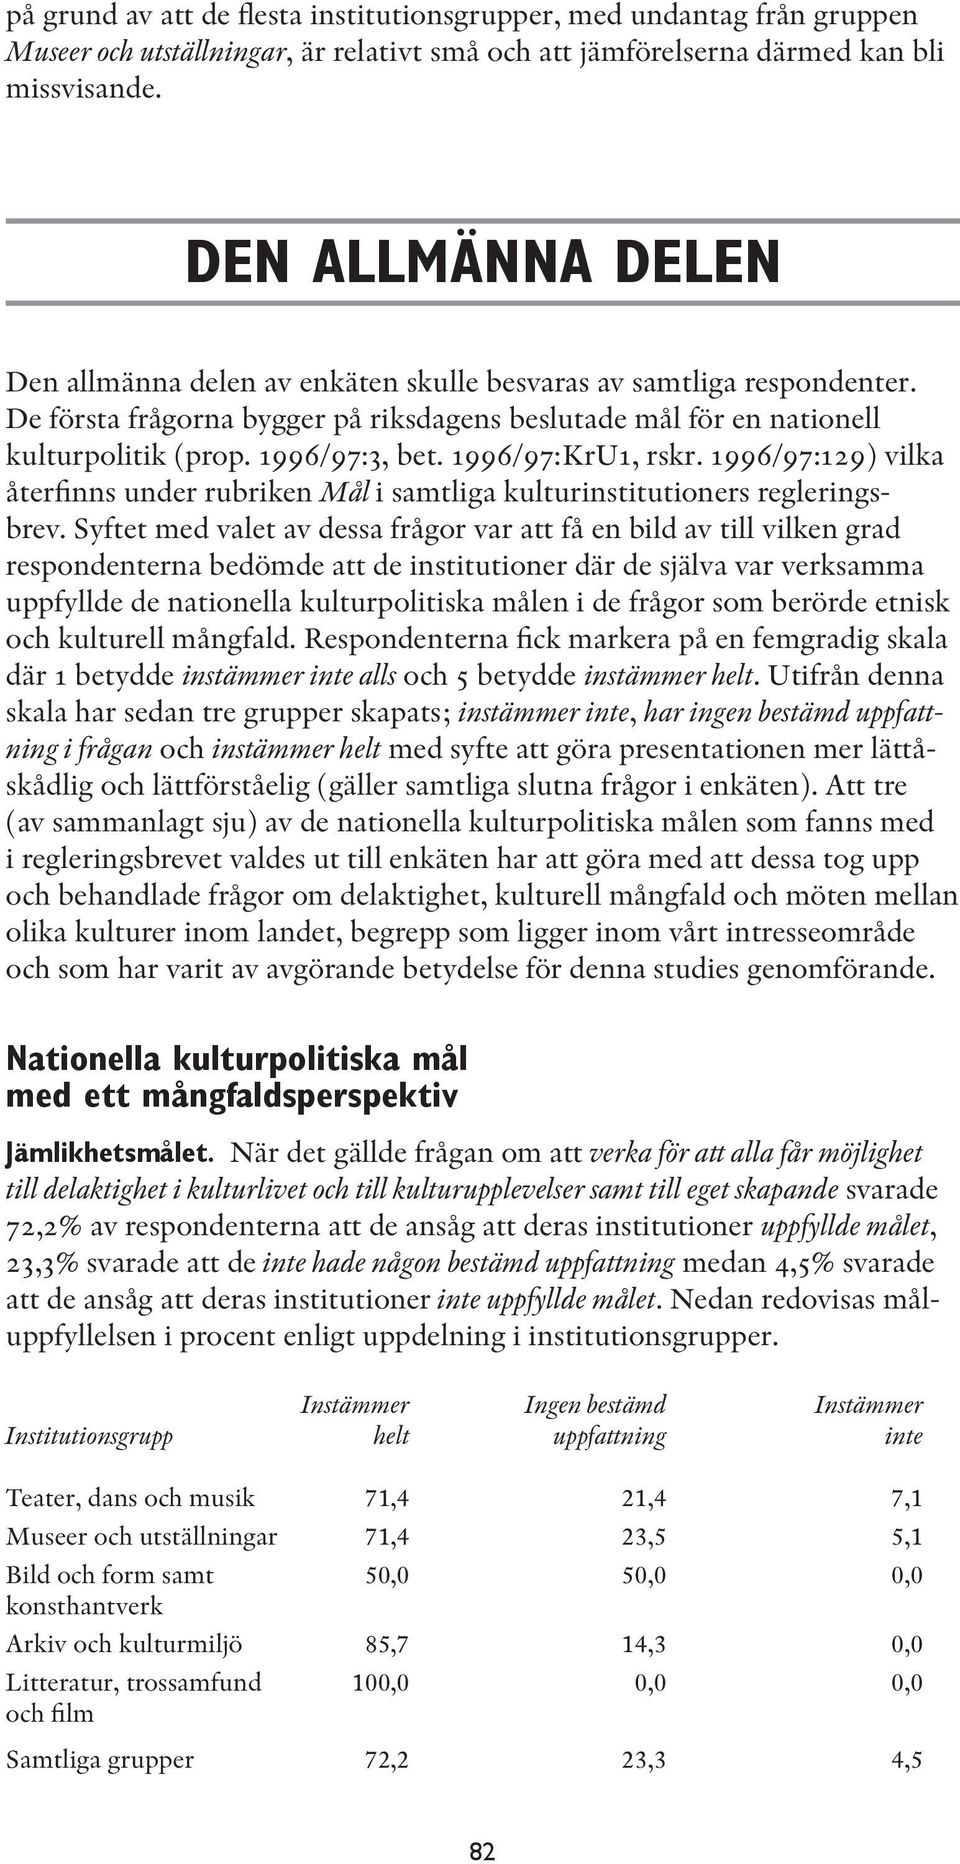 1996/97:KrU1, rskr. 1996/97:129) vilka återfinns under rubriken Mål i samtliga kulturinstitutioners regleringsbrev.